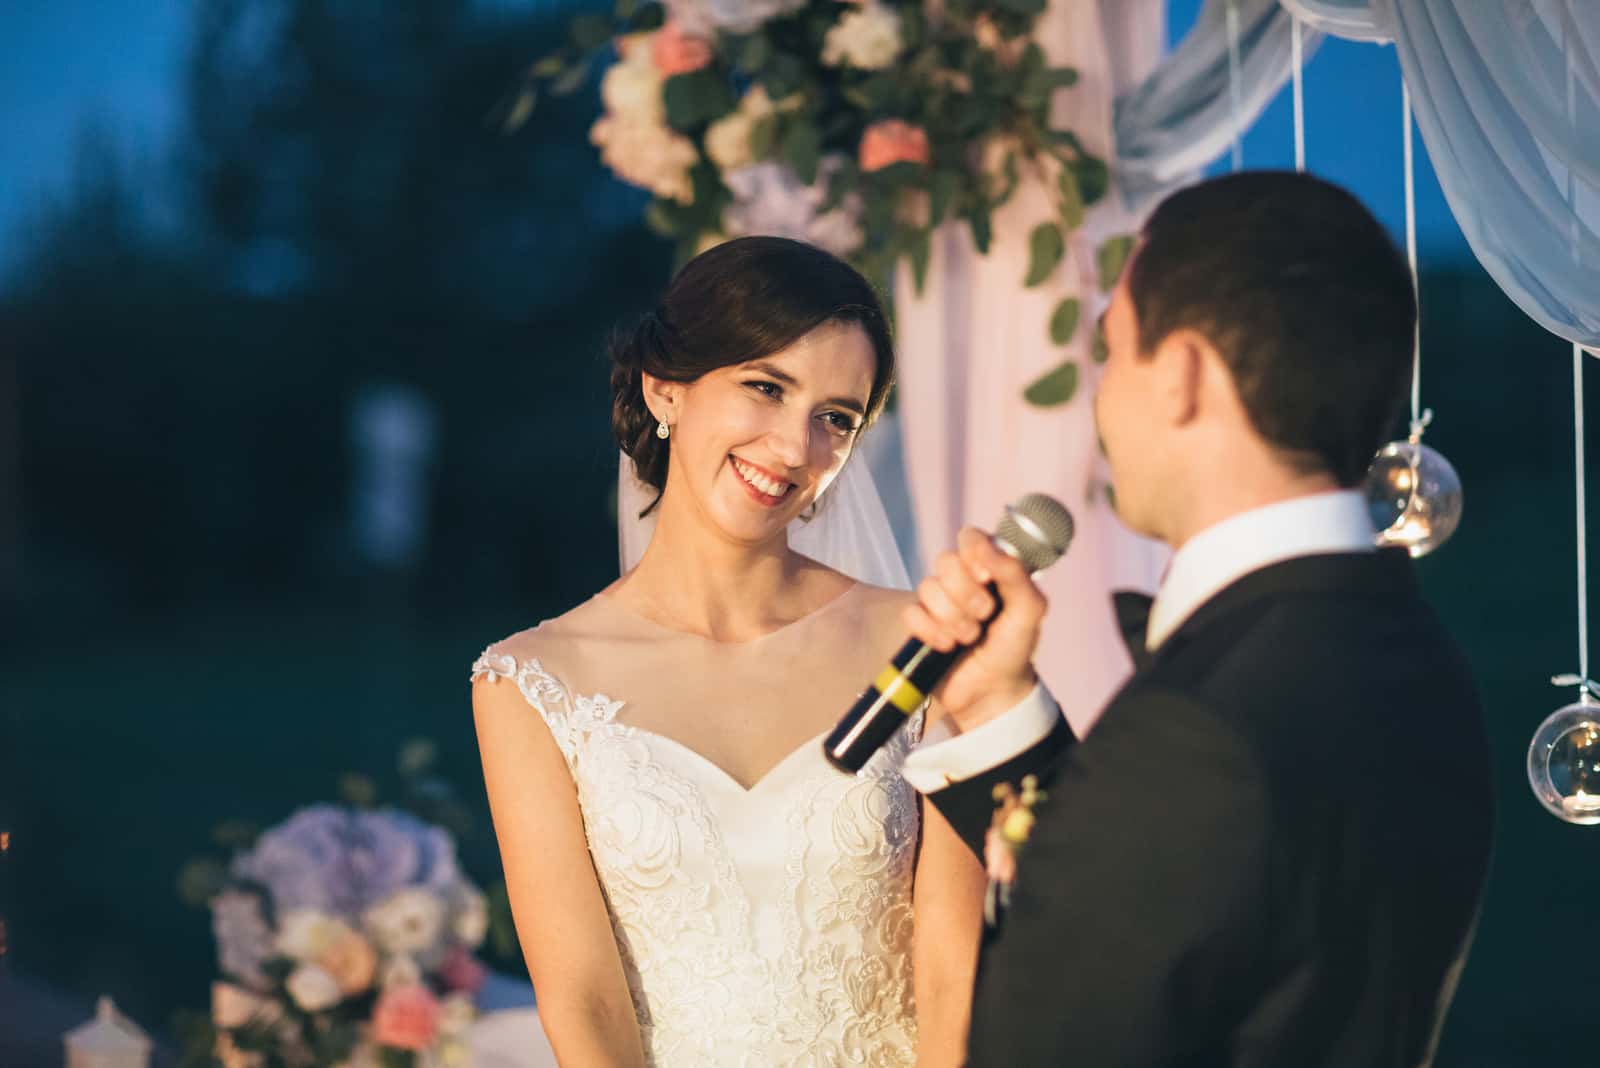 Der Bräutigam hält ein Mikrofon und spricht zu seiner Braut